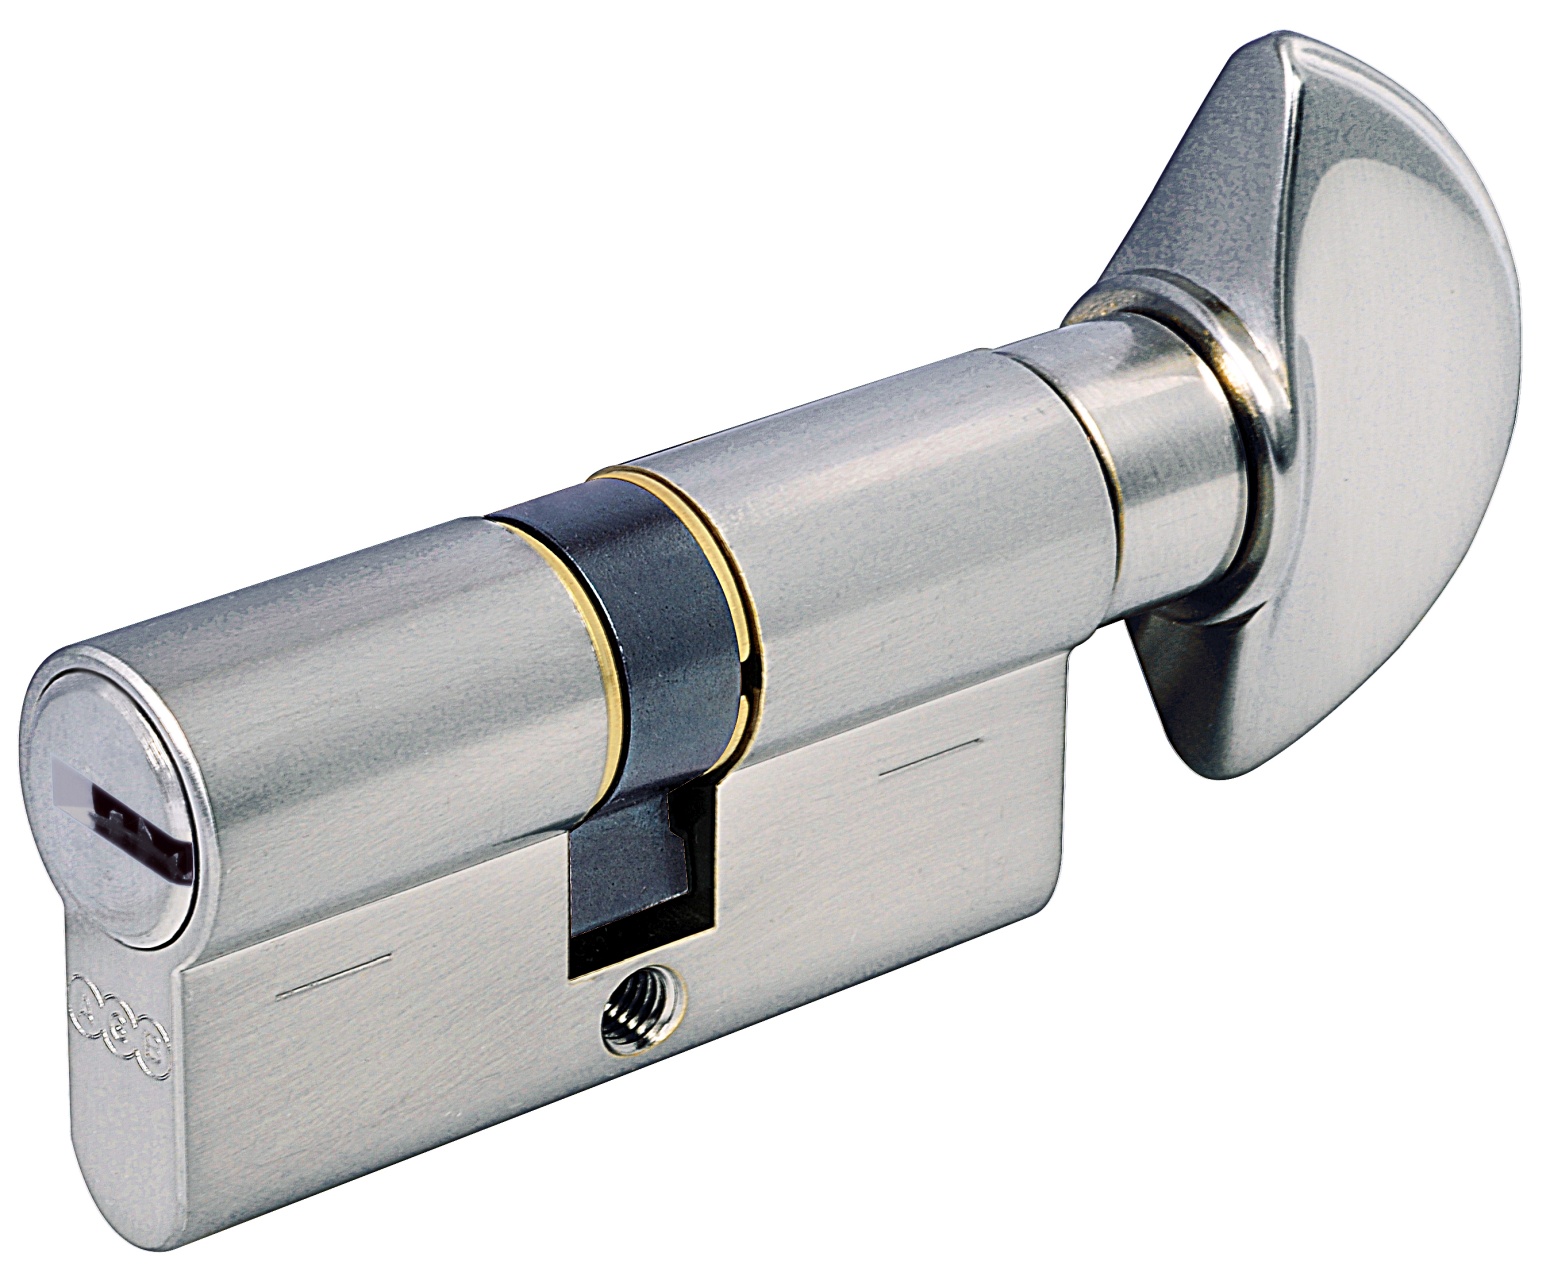 AGB -  Cilindro SCUDO 5000 PS frizionato anti bamping con chiave e pomolo - col. NICHELATO OPACO - lunghezza 115 - misura P-40-10-65